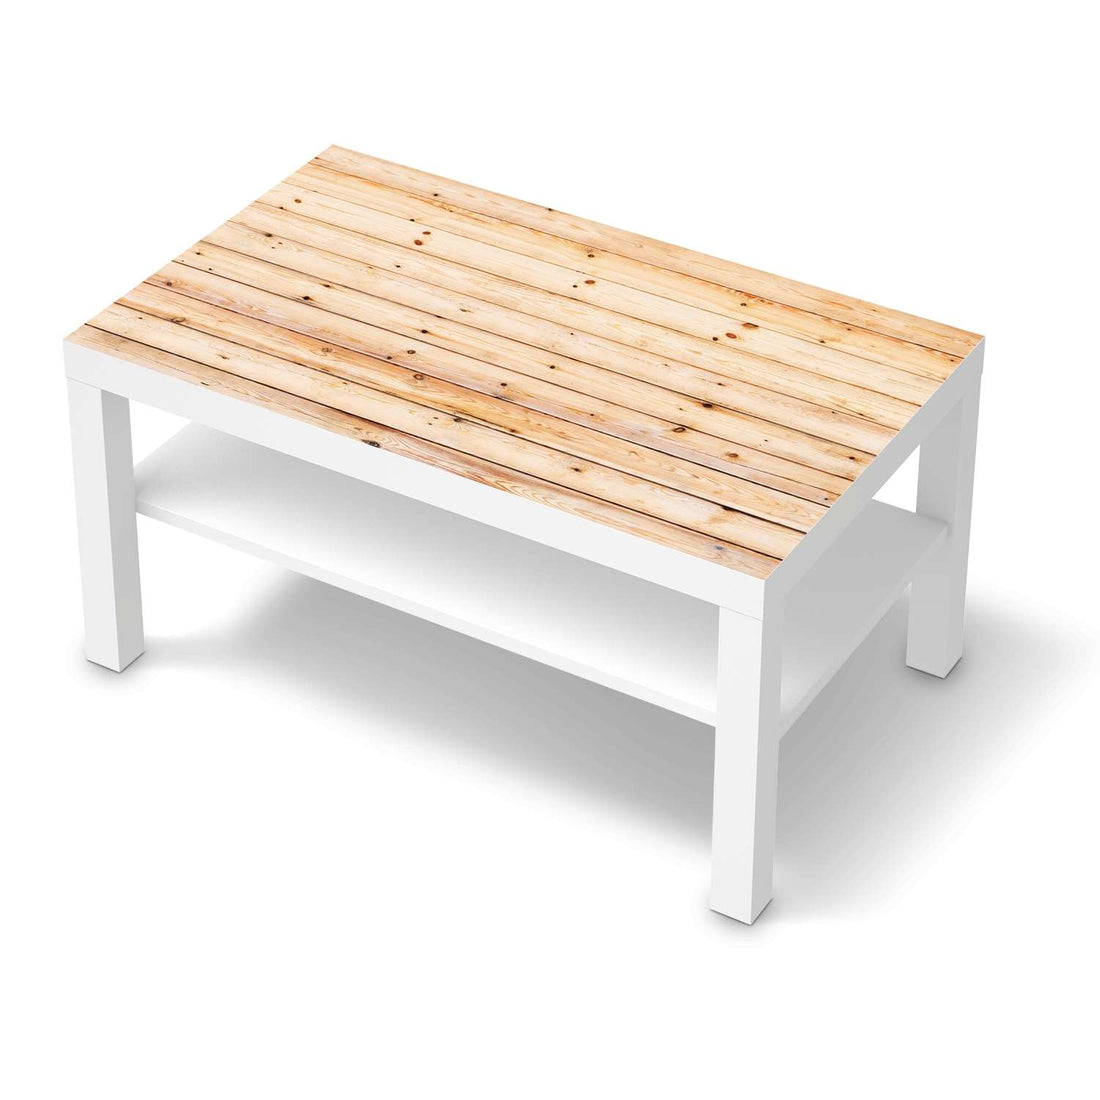 Möbelfolie Bright Planks - IKEA Lack Tisch 90x55 cm - weiss